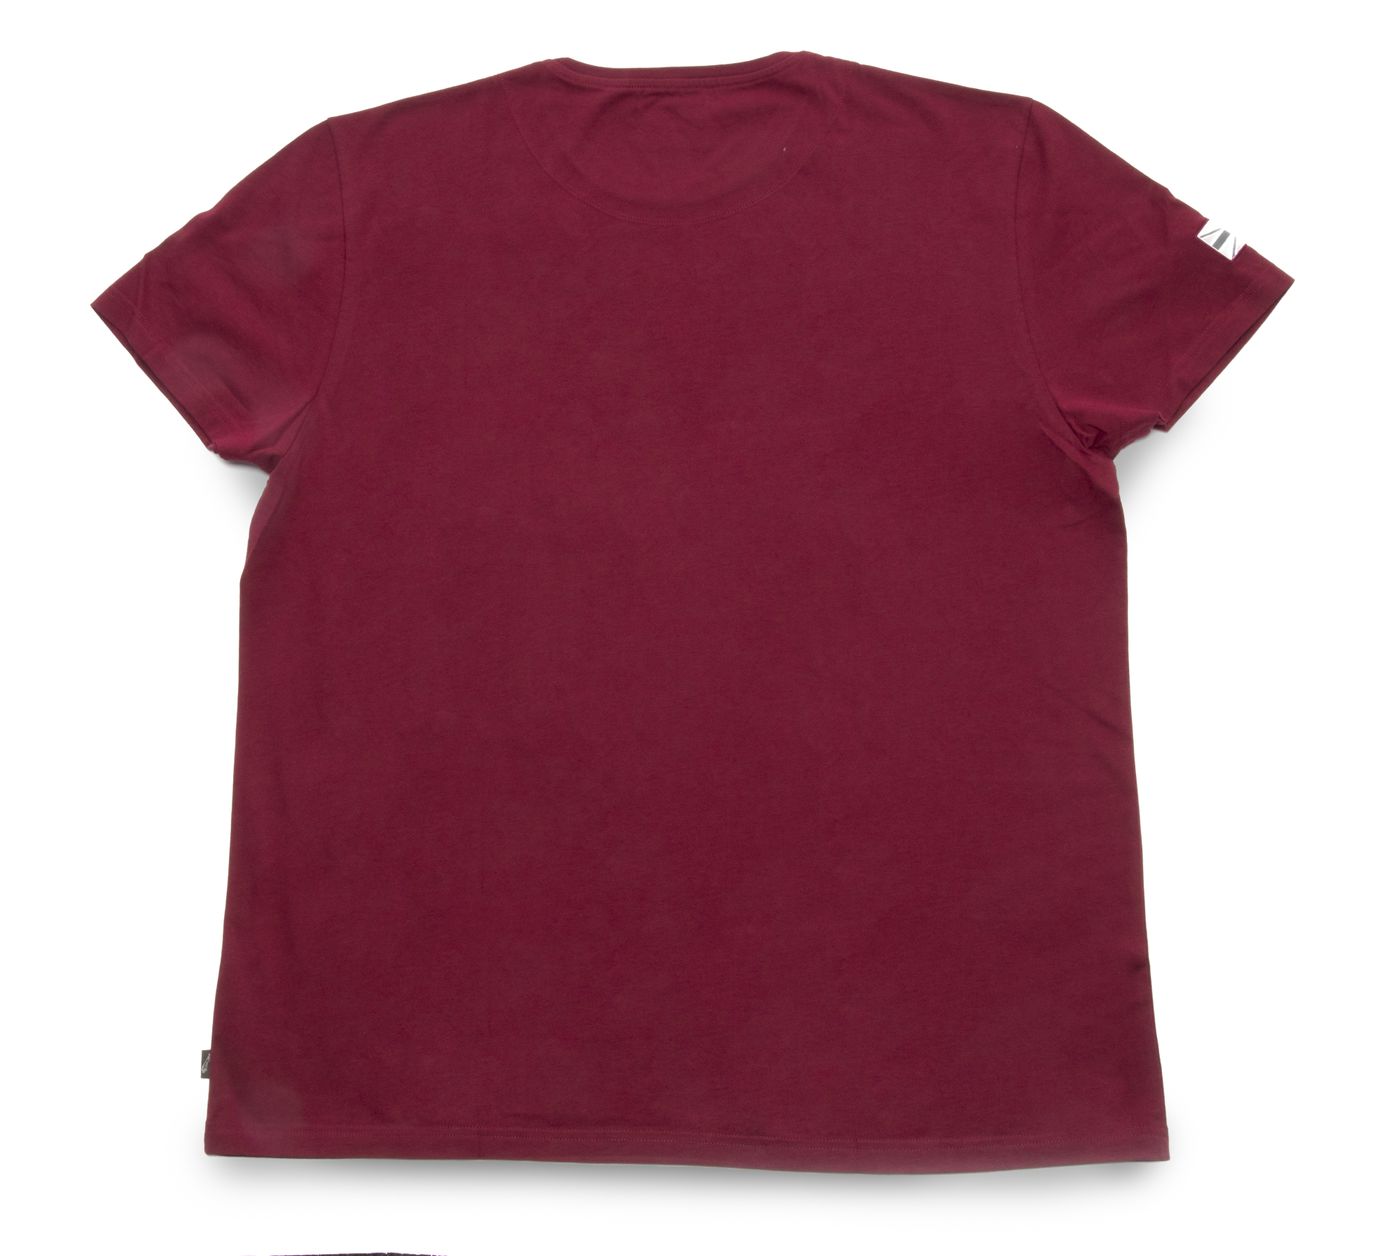 T-Shirt
T-shirt
T-shirt
T-Shirt
Jersey